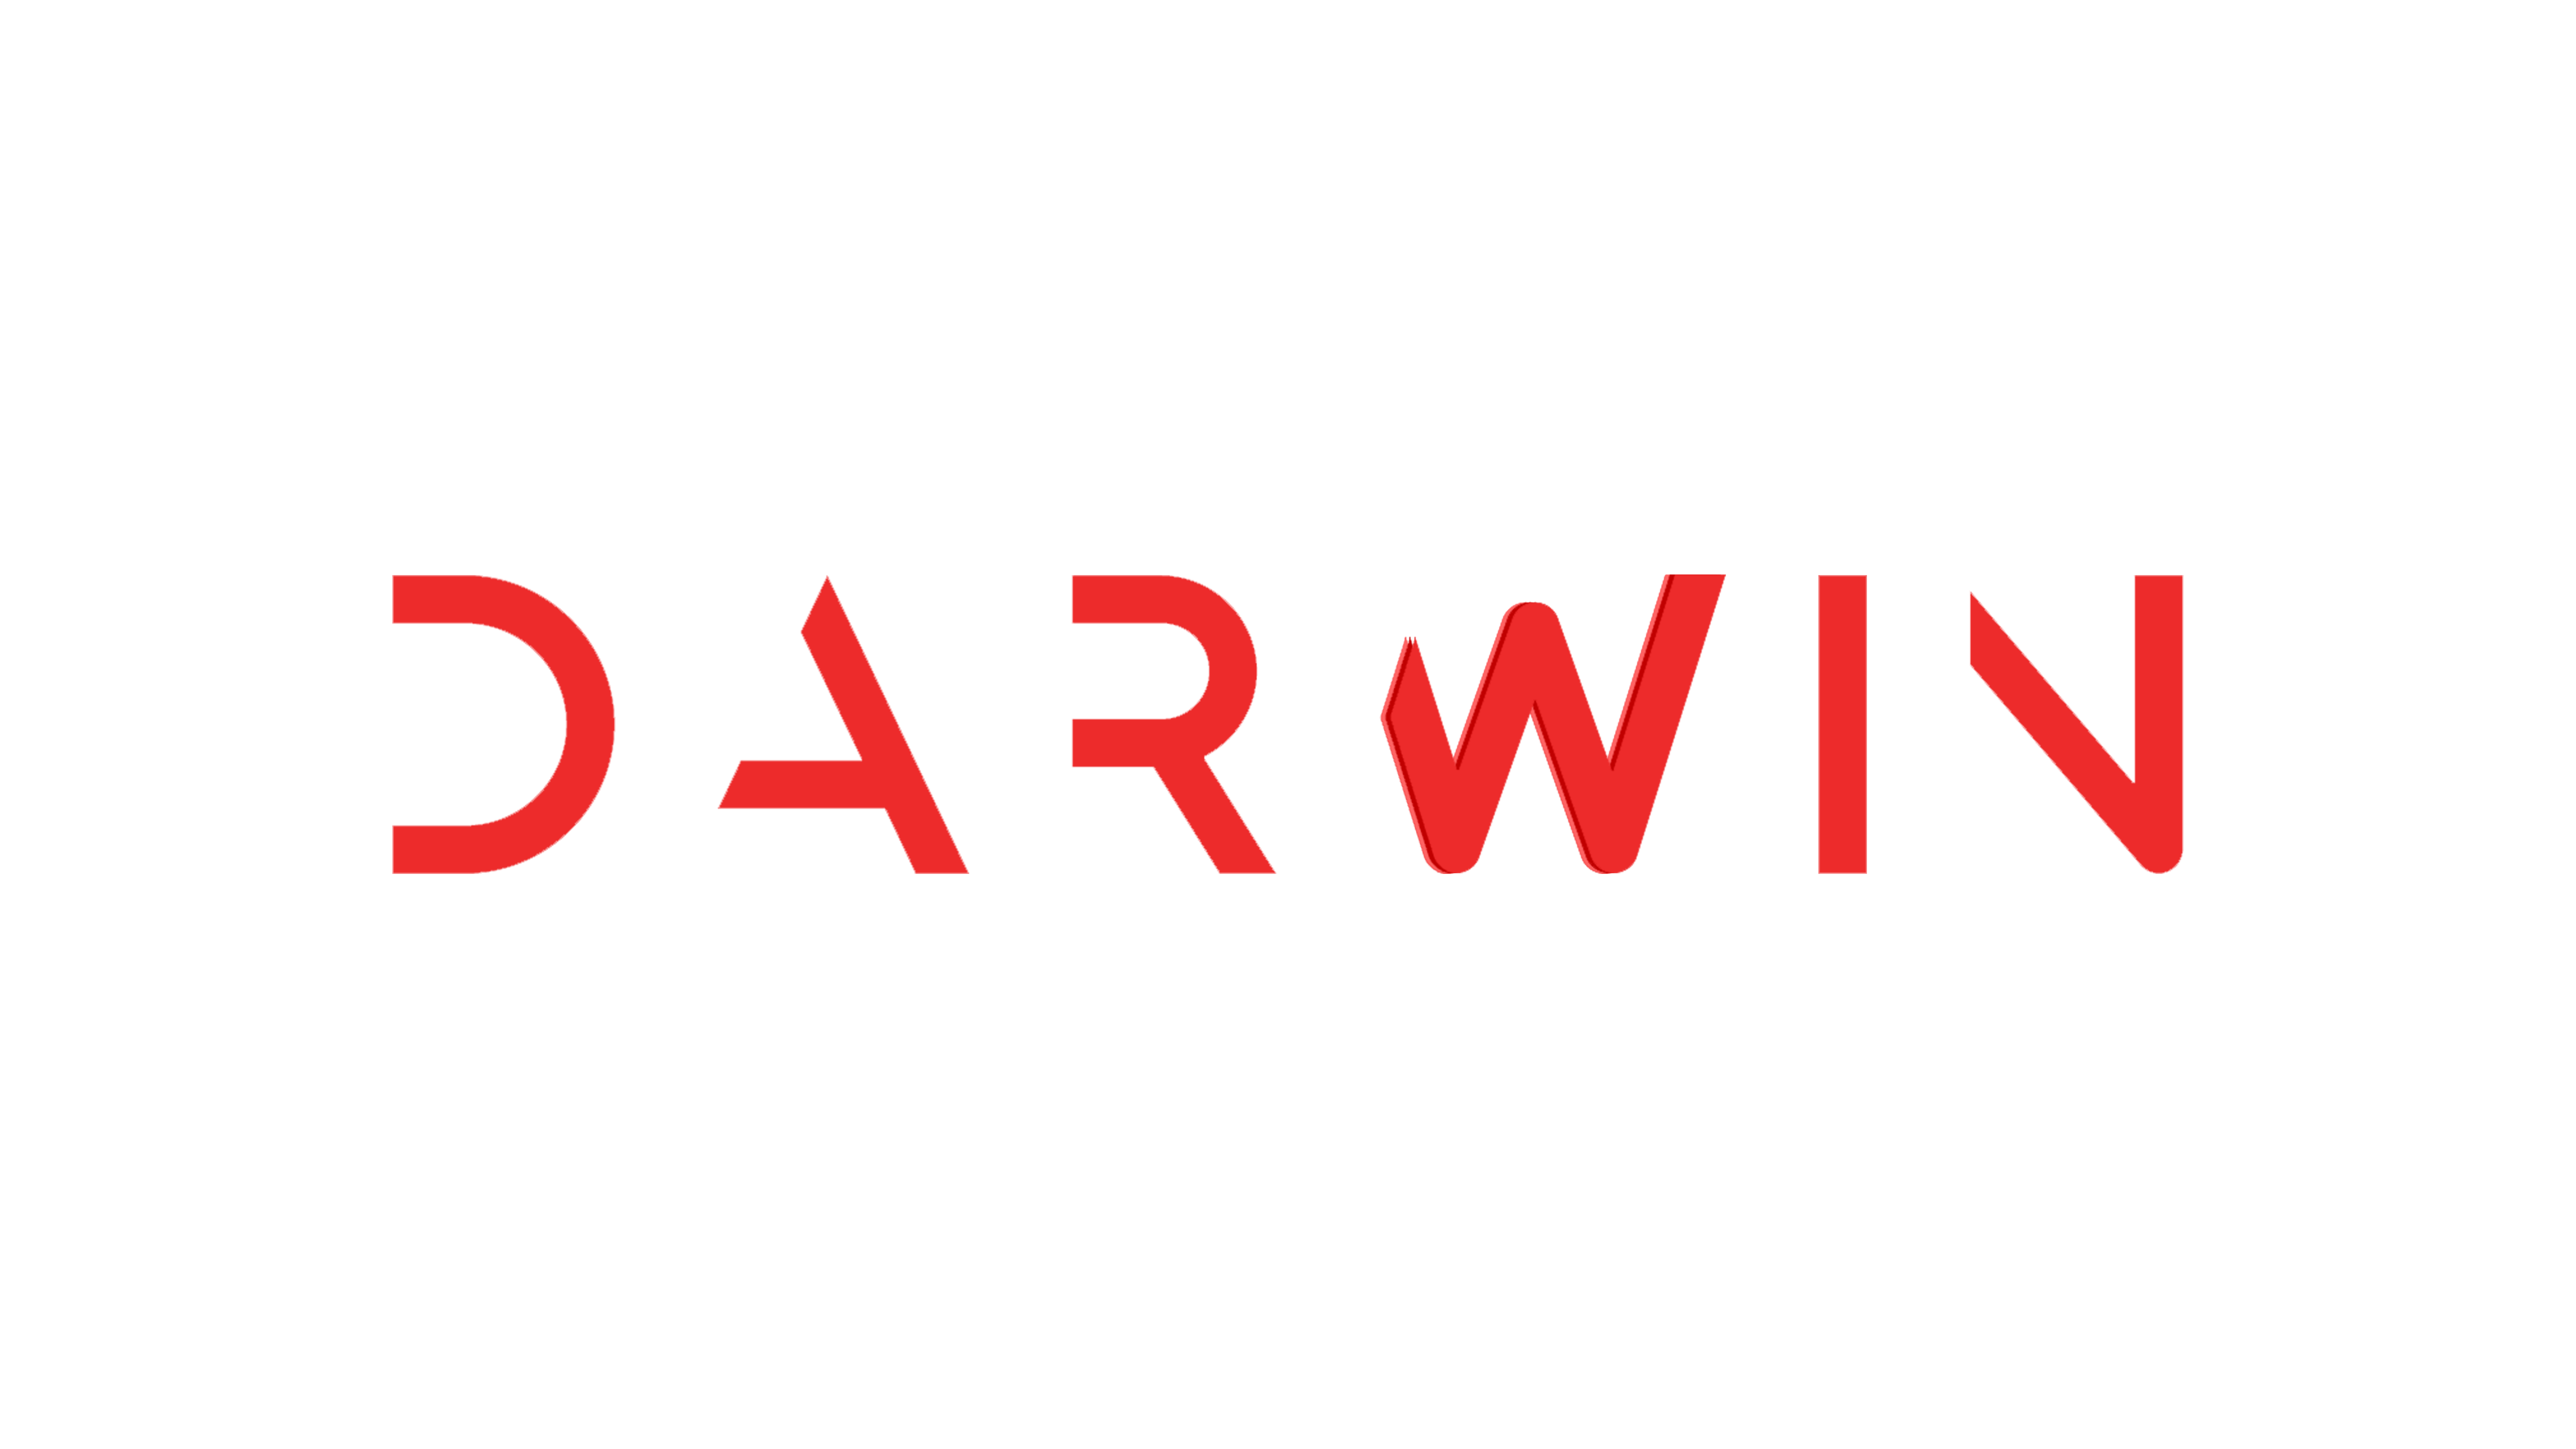 Darwwwin